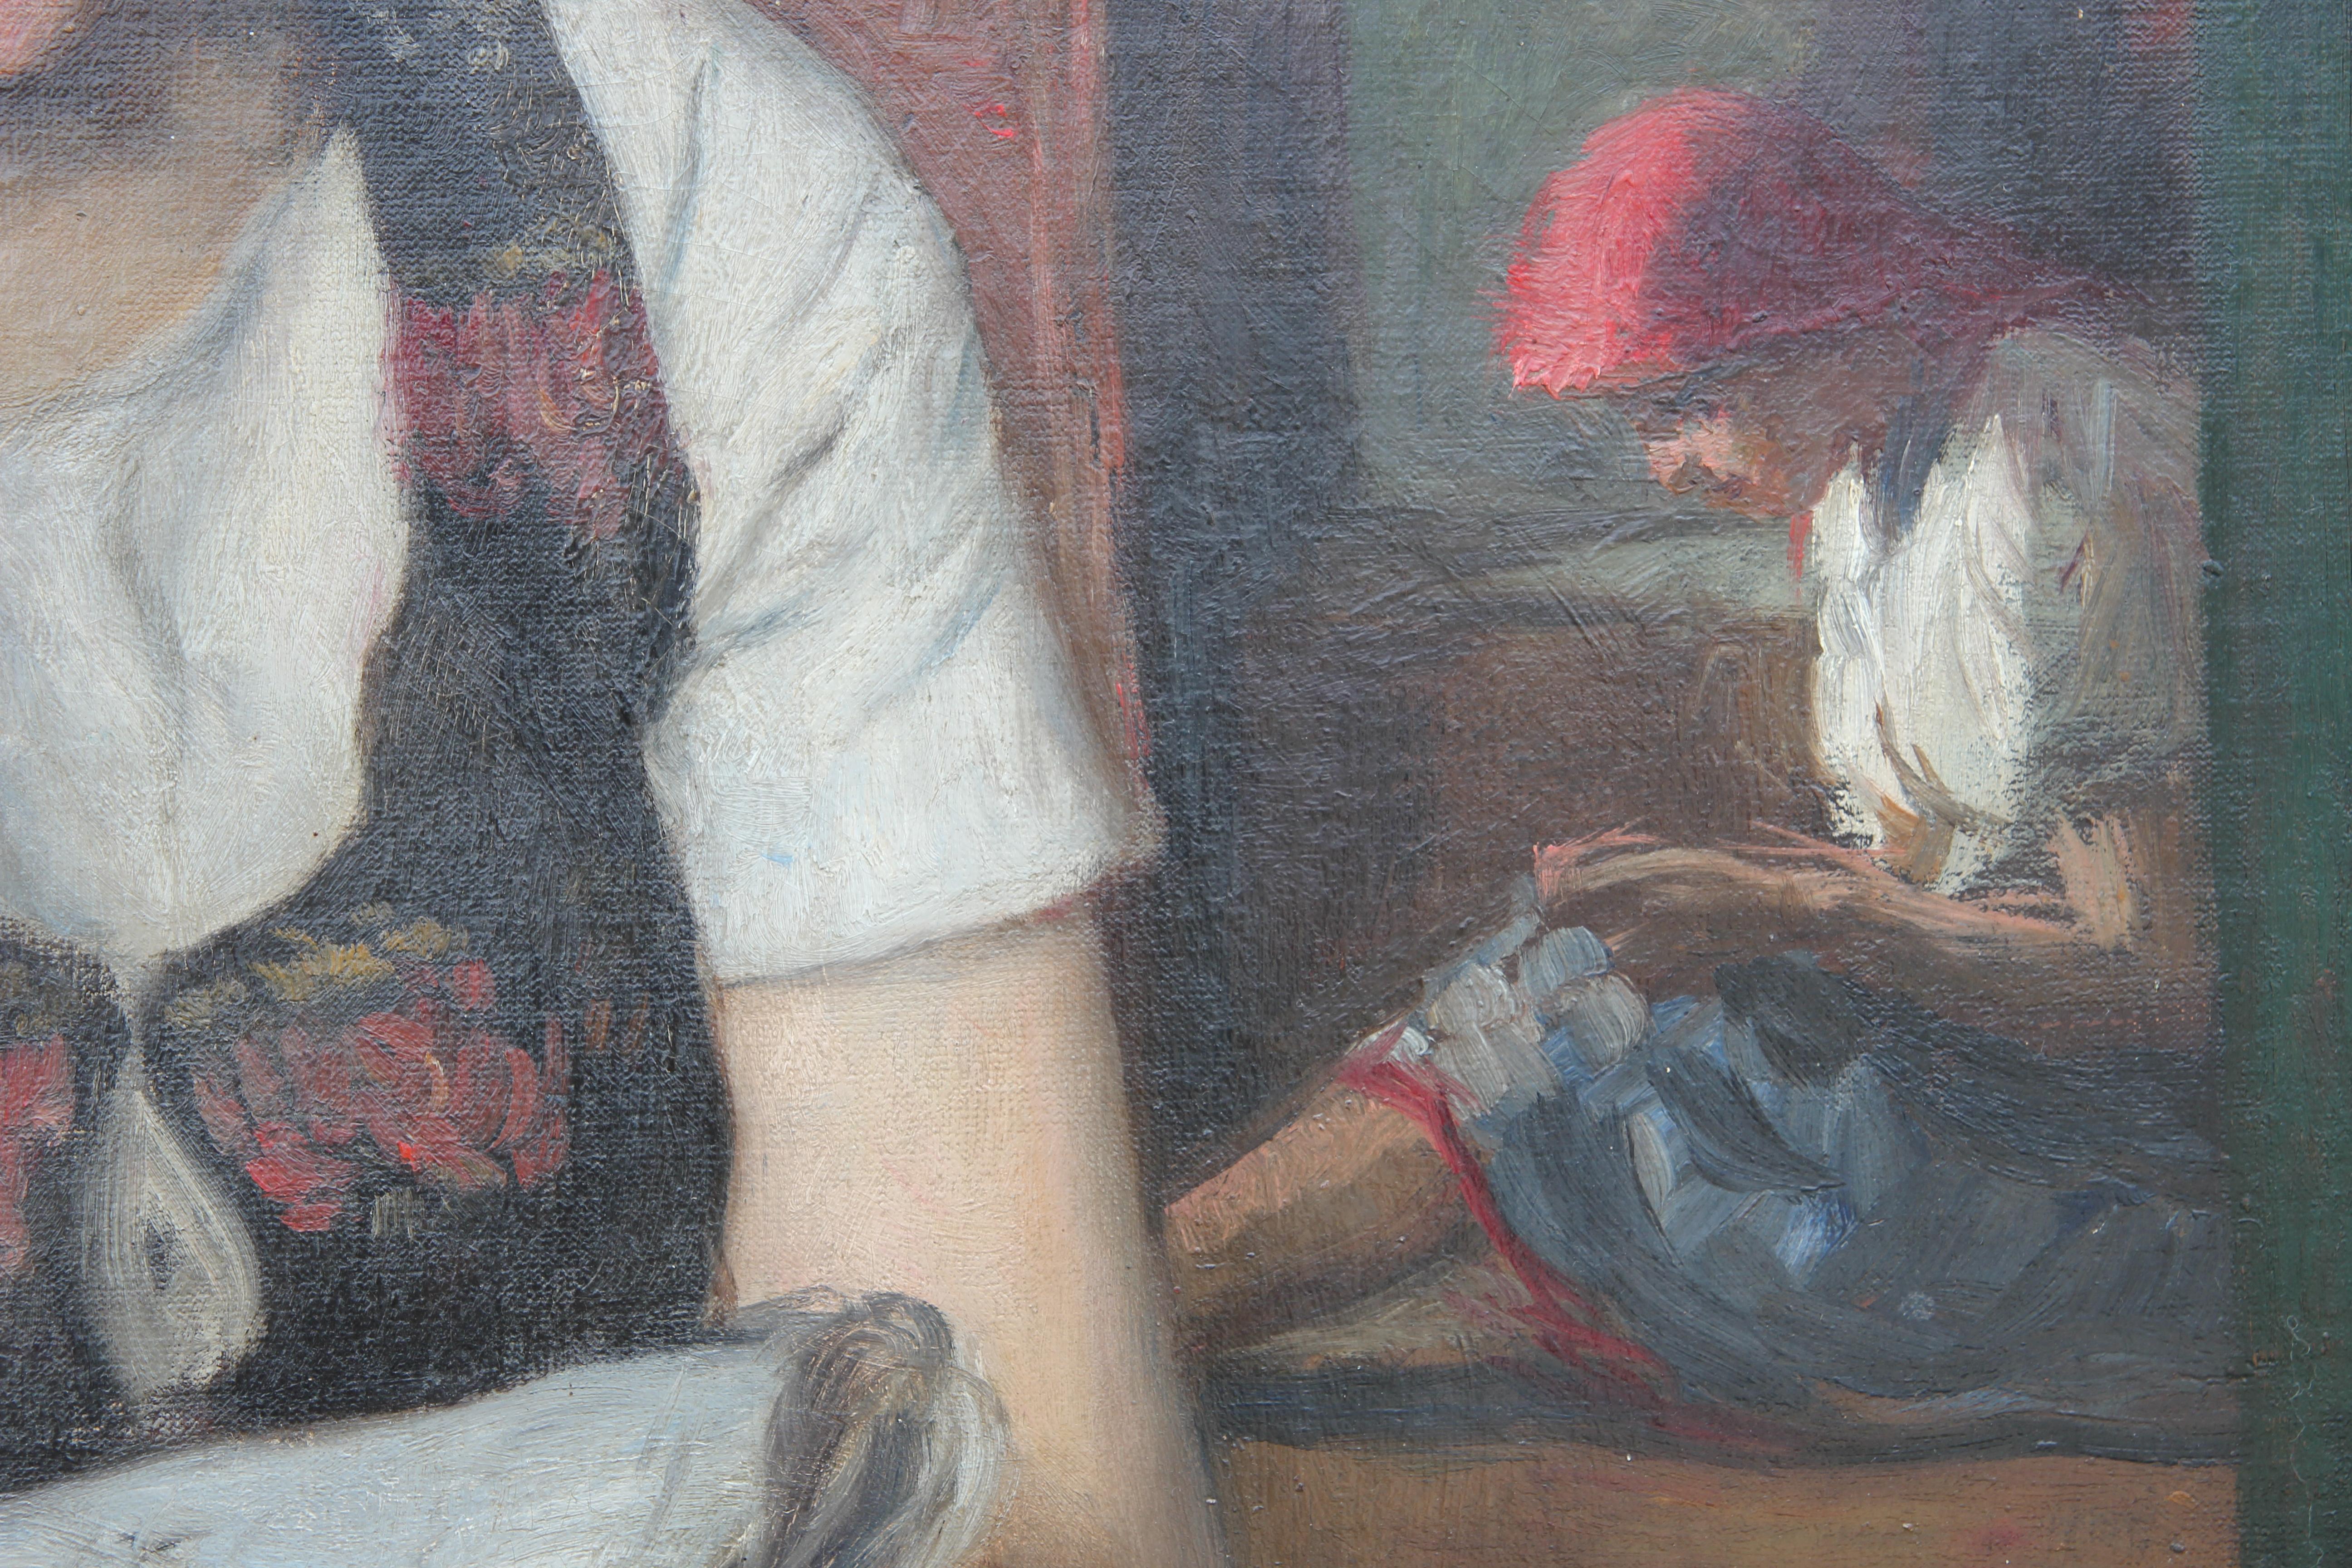 Tableau de scène domestique représentant deux jeunes filles lisant un livre. Une autre figure est assise dans l'embrasure d'une porte à l'arrière-plan, occupée par un objet qu'elle tient dans ses mains. La toile est encadrée dans un élégant cadre